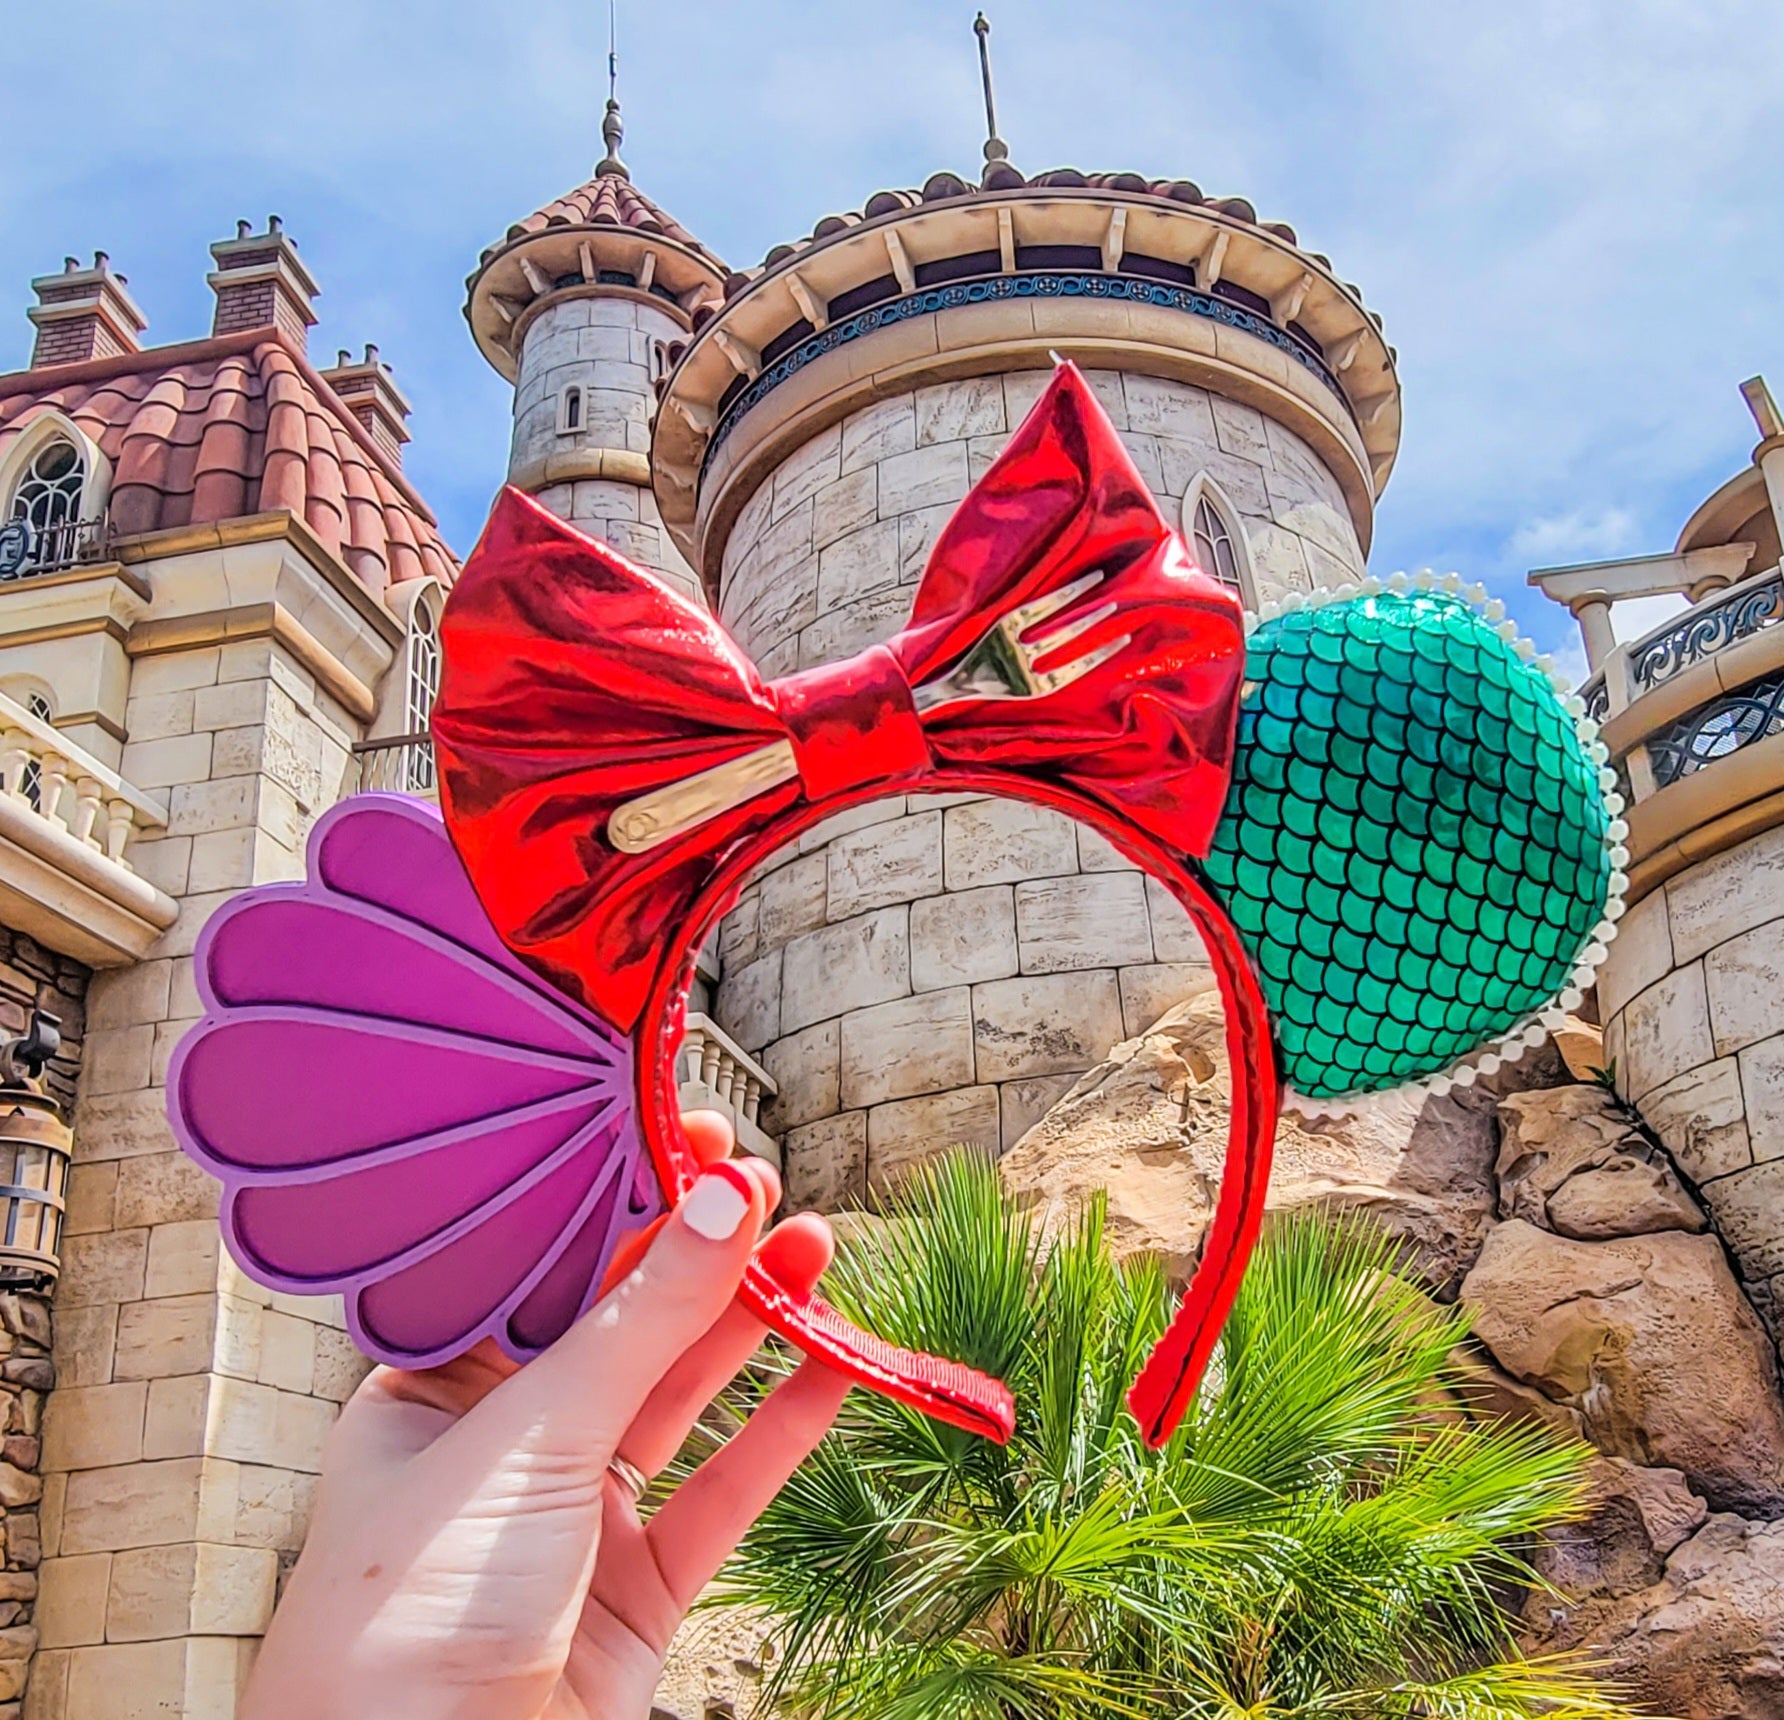 Little Mermaid Disneyland Mickey Ears: Where To Buy